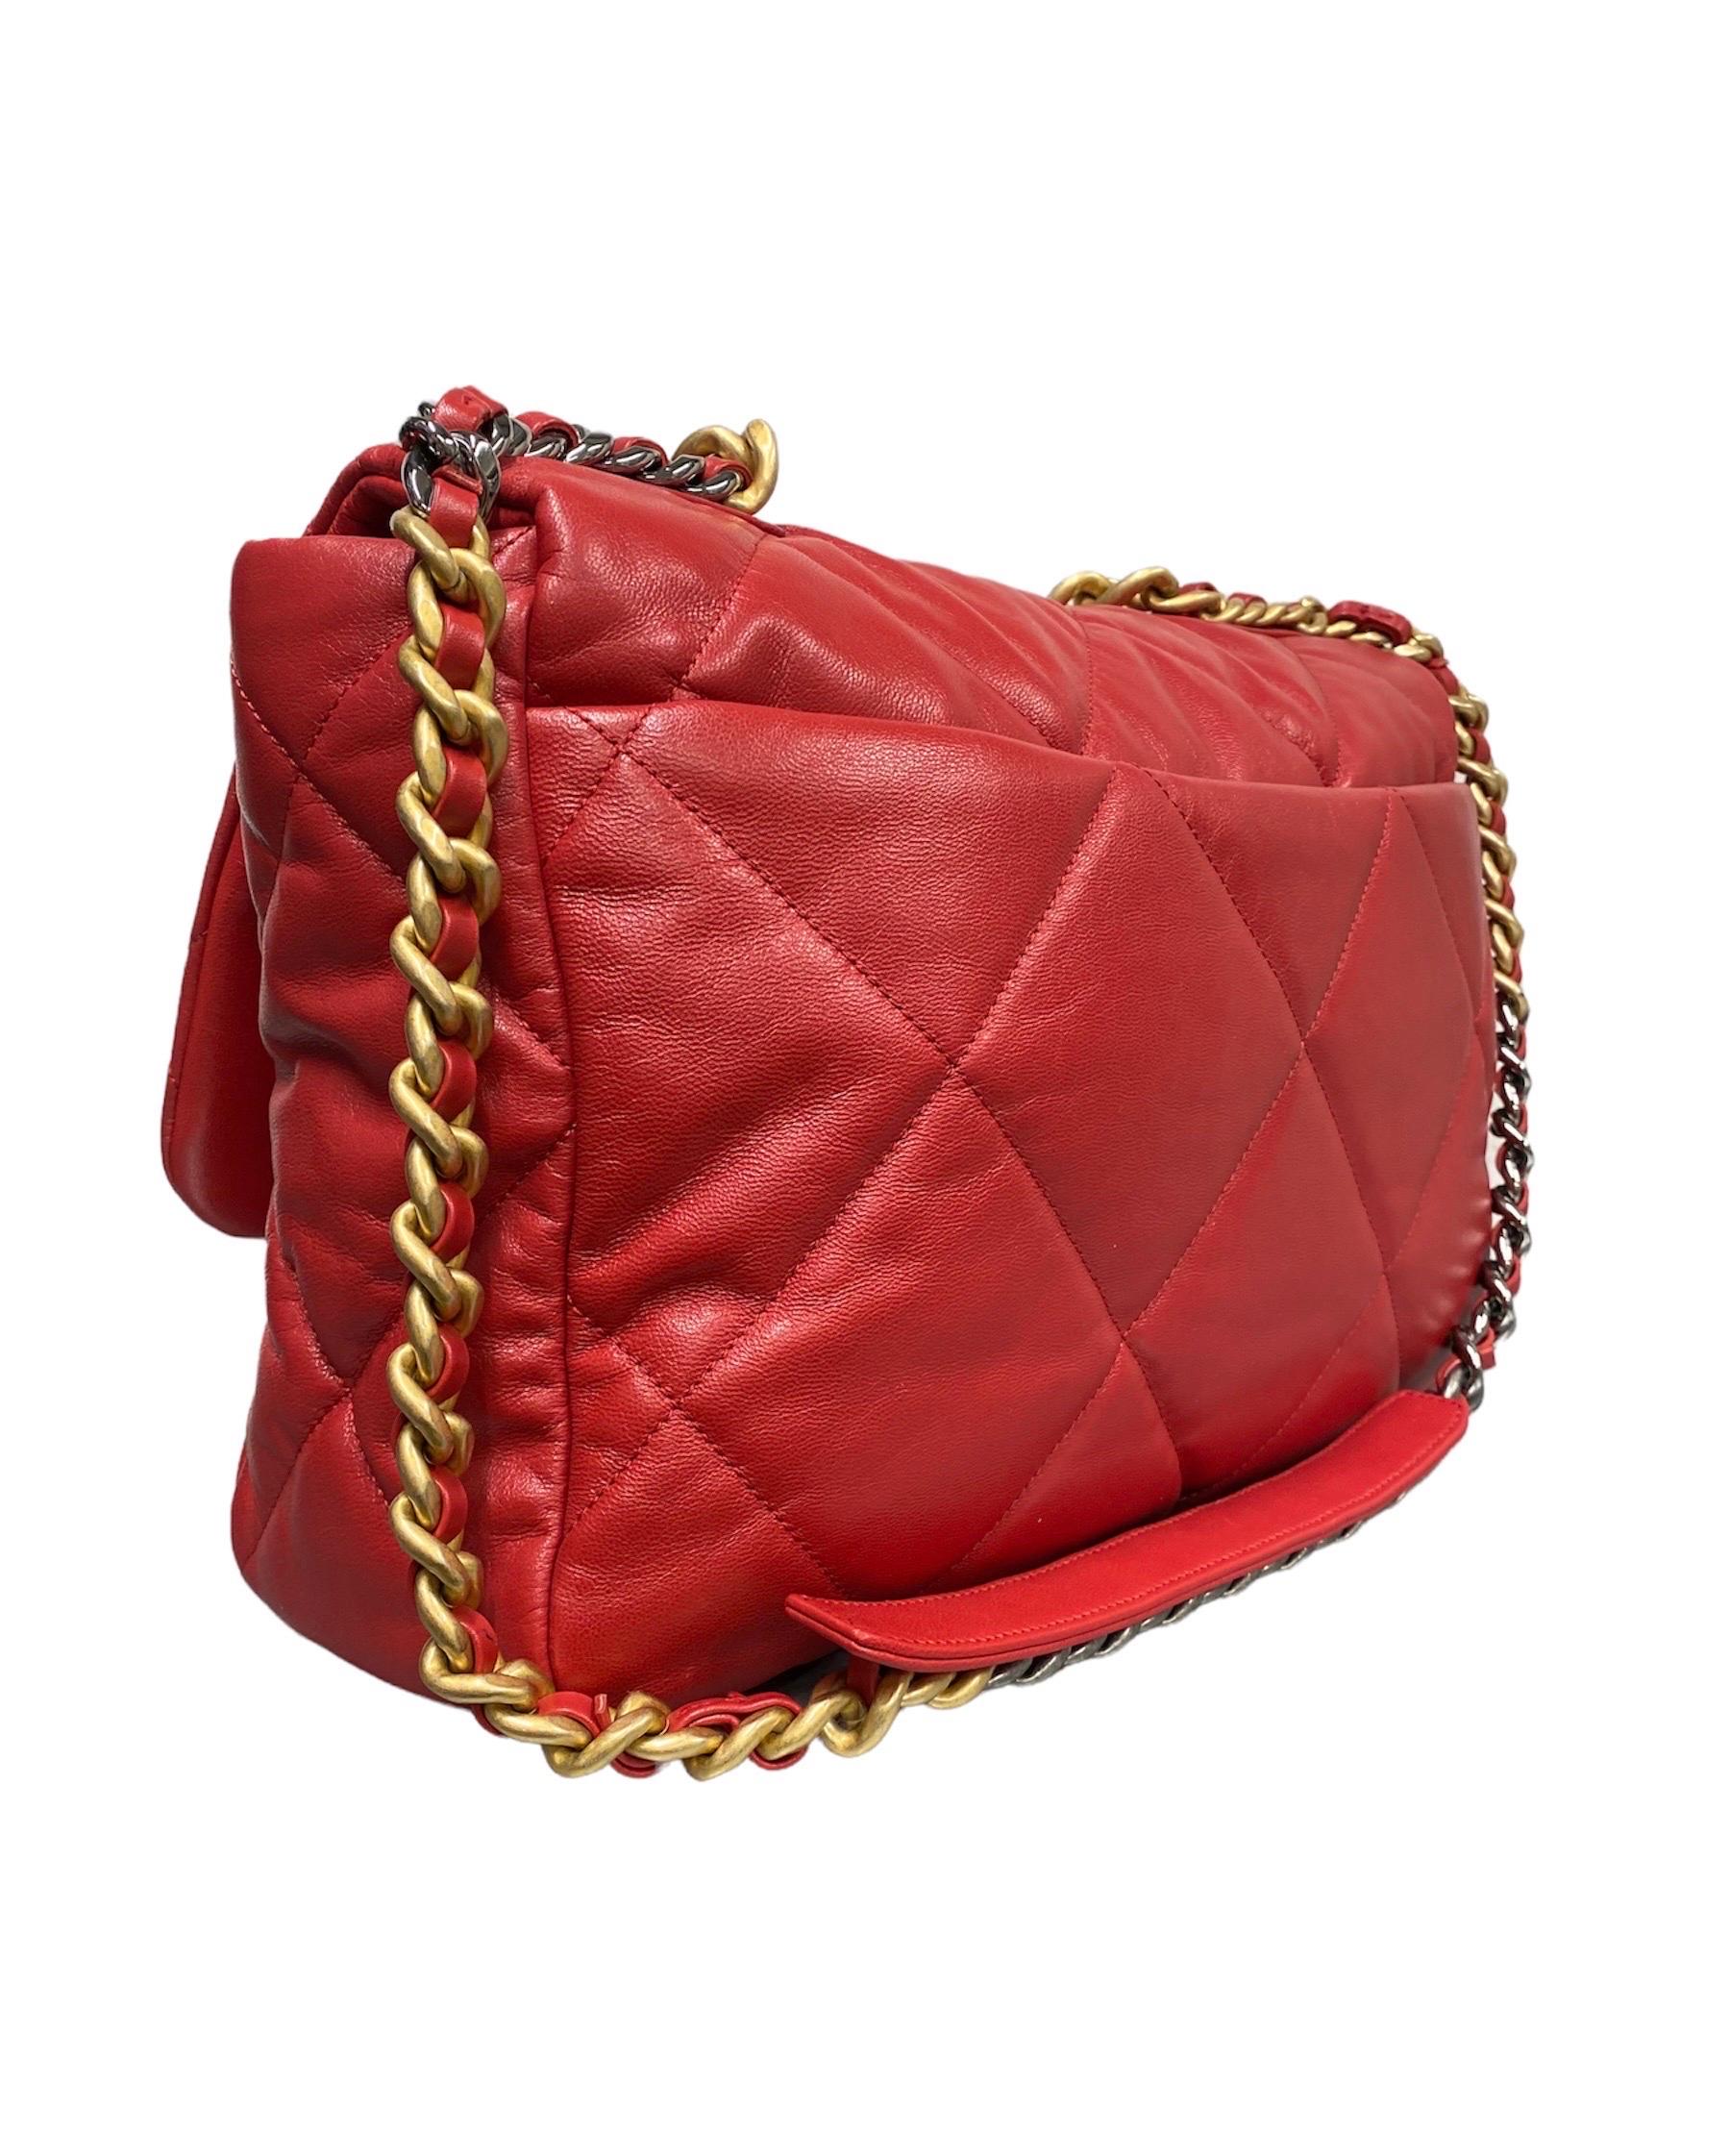 Women's 2019 Chanel 19 Red Shoulder Bag Big Size